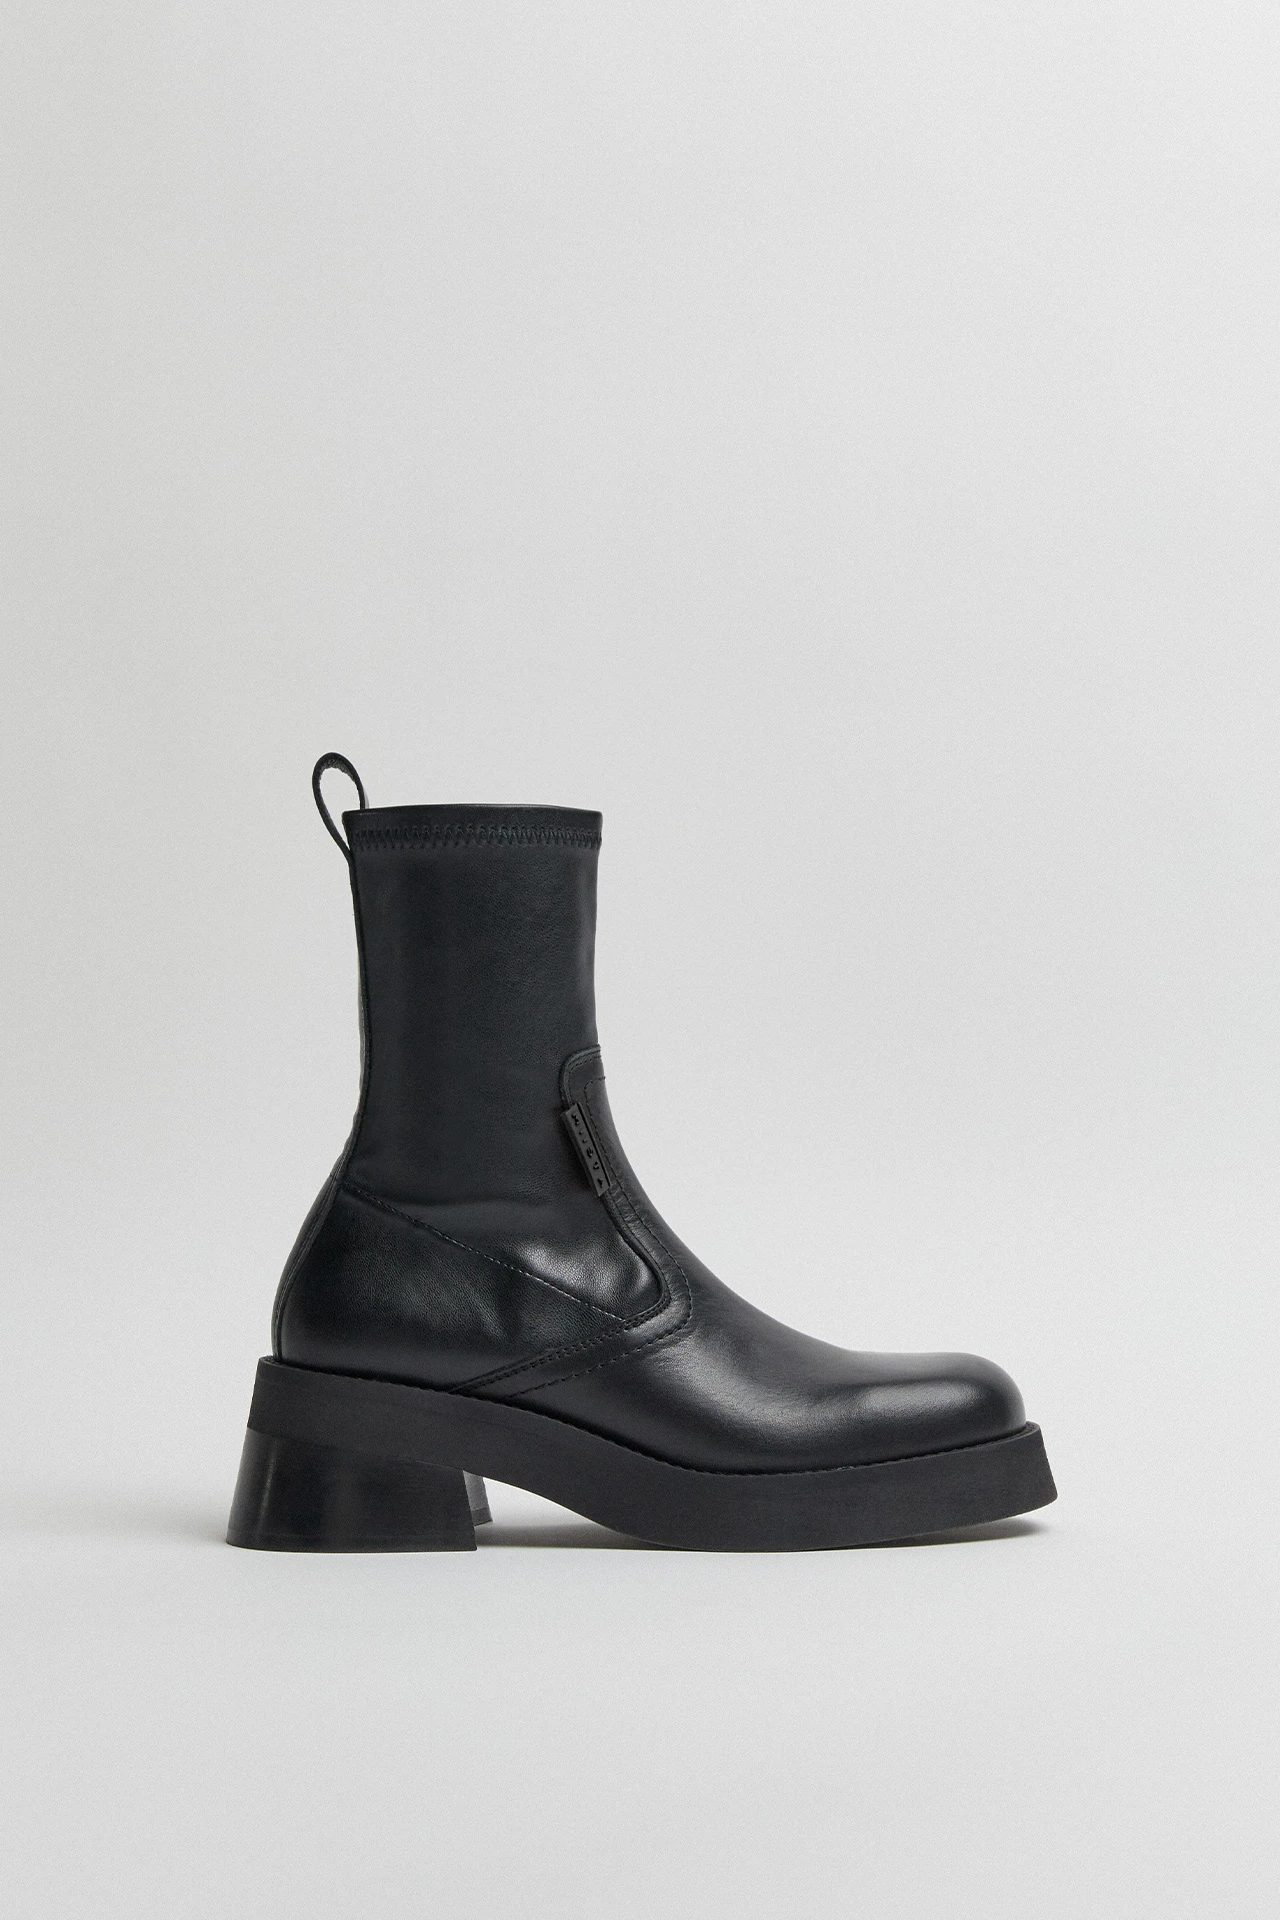 E8-oliana-black-ankle-boots-01